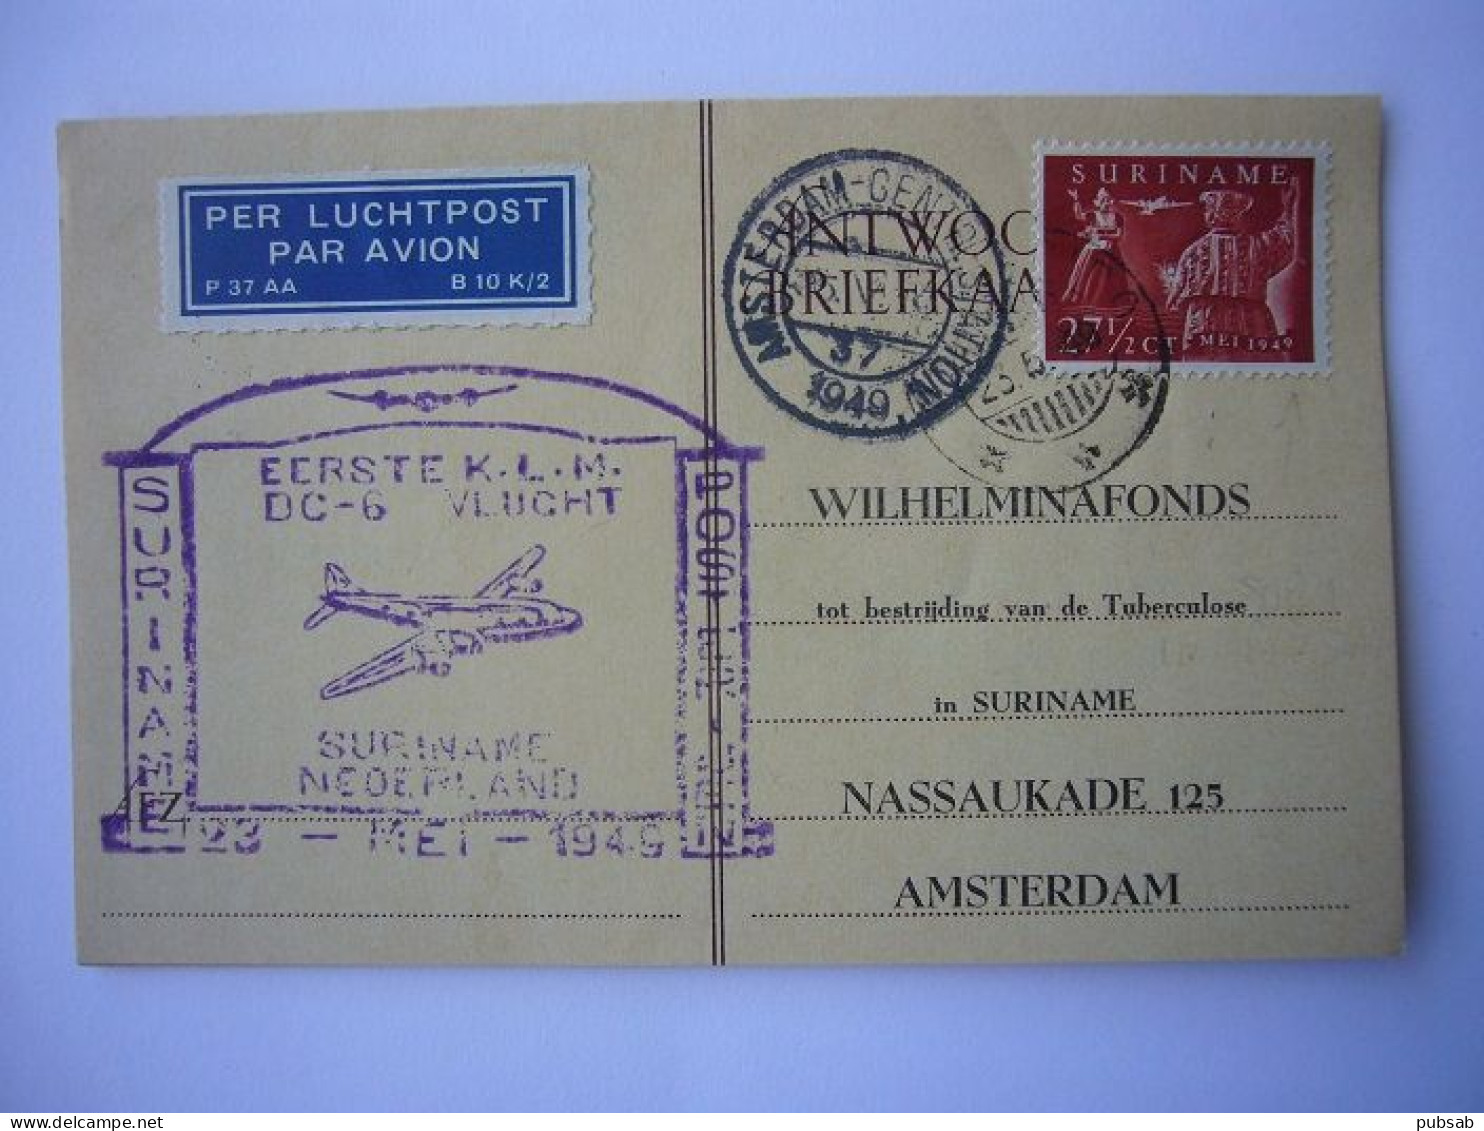 Avion / Airplane / KLM / DC-6 / First Flight Suriname - Nederland / May 23,1949 - 1946-....: Modern Era